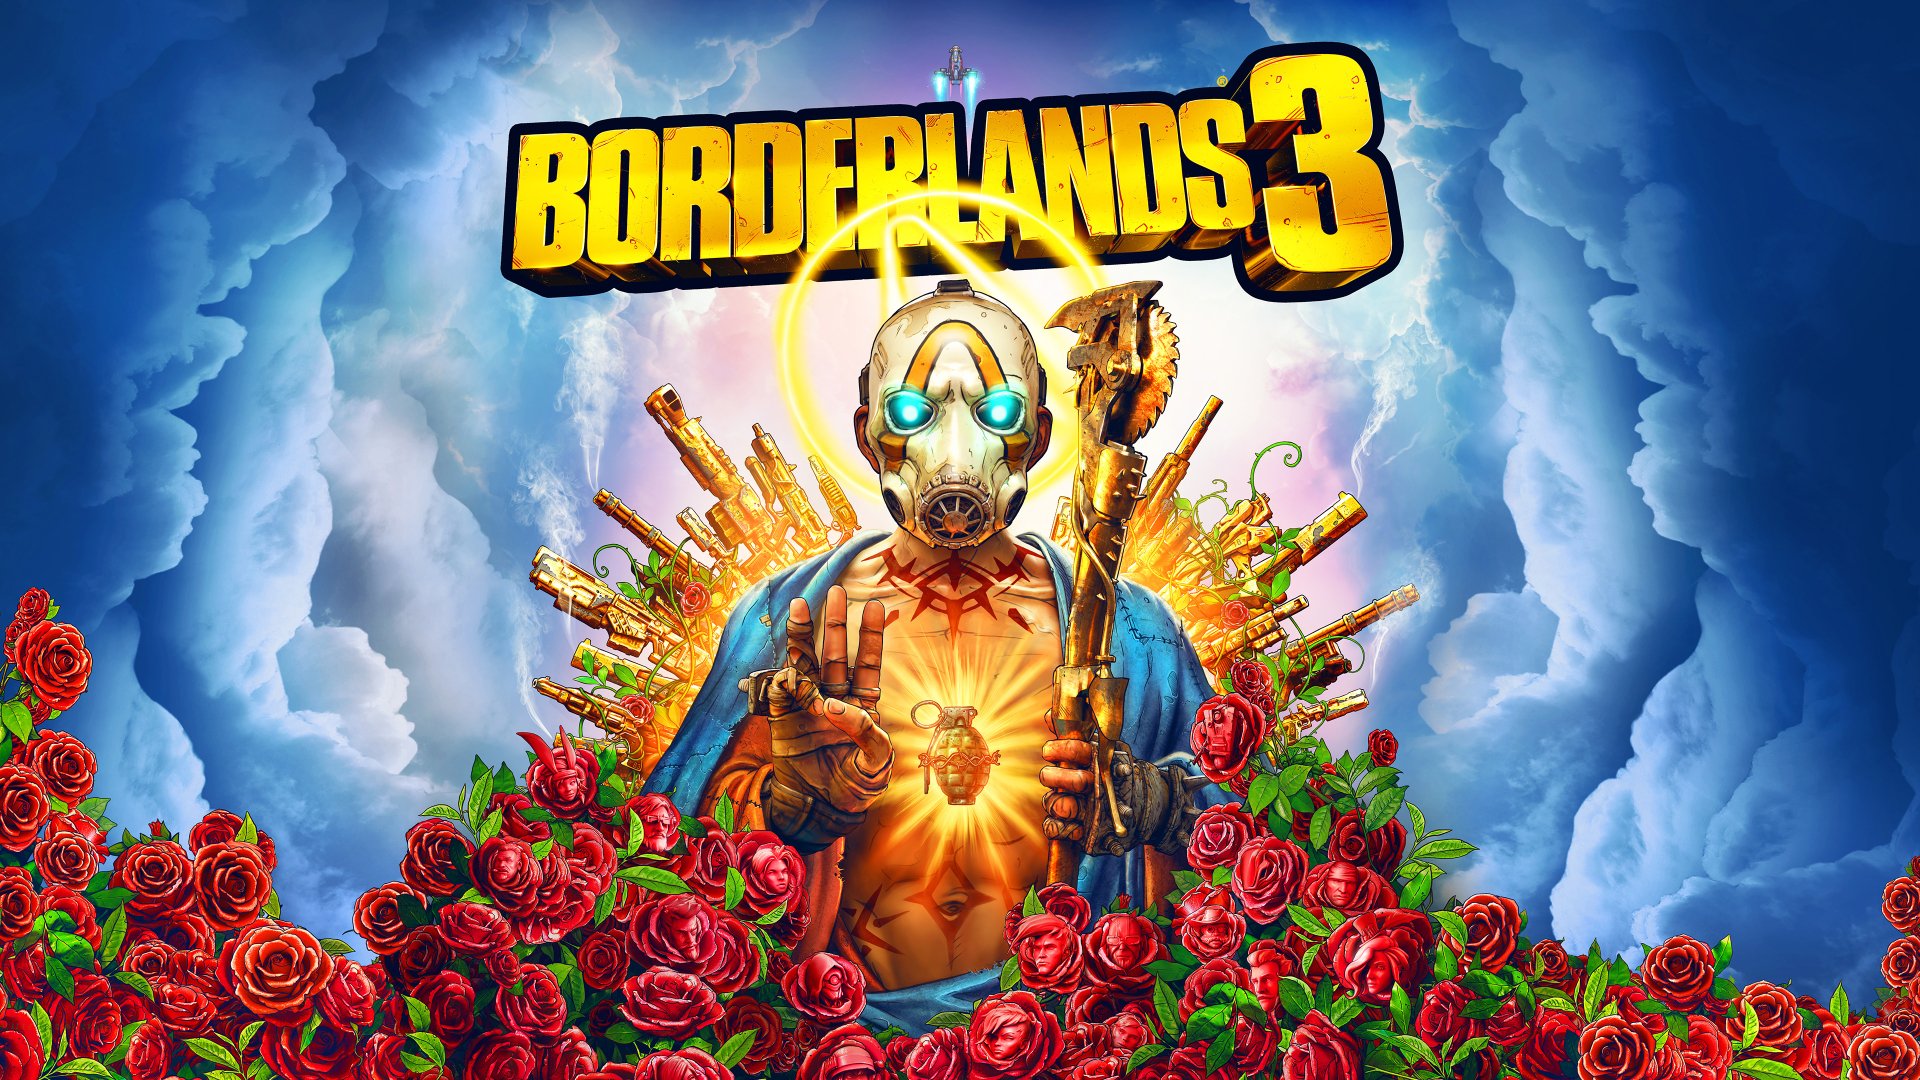 70 Borderlands 3 HD Wallpapers